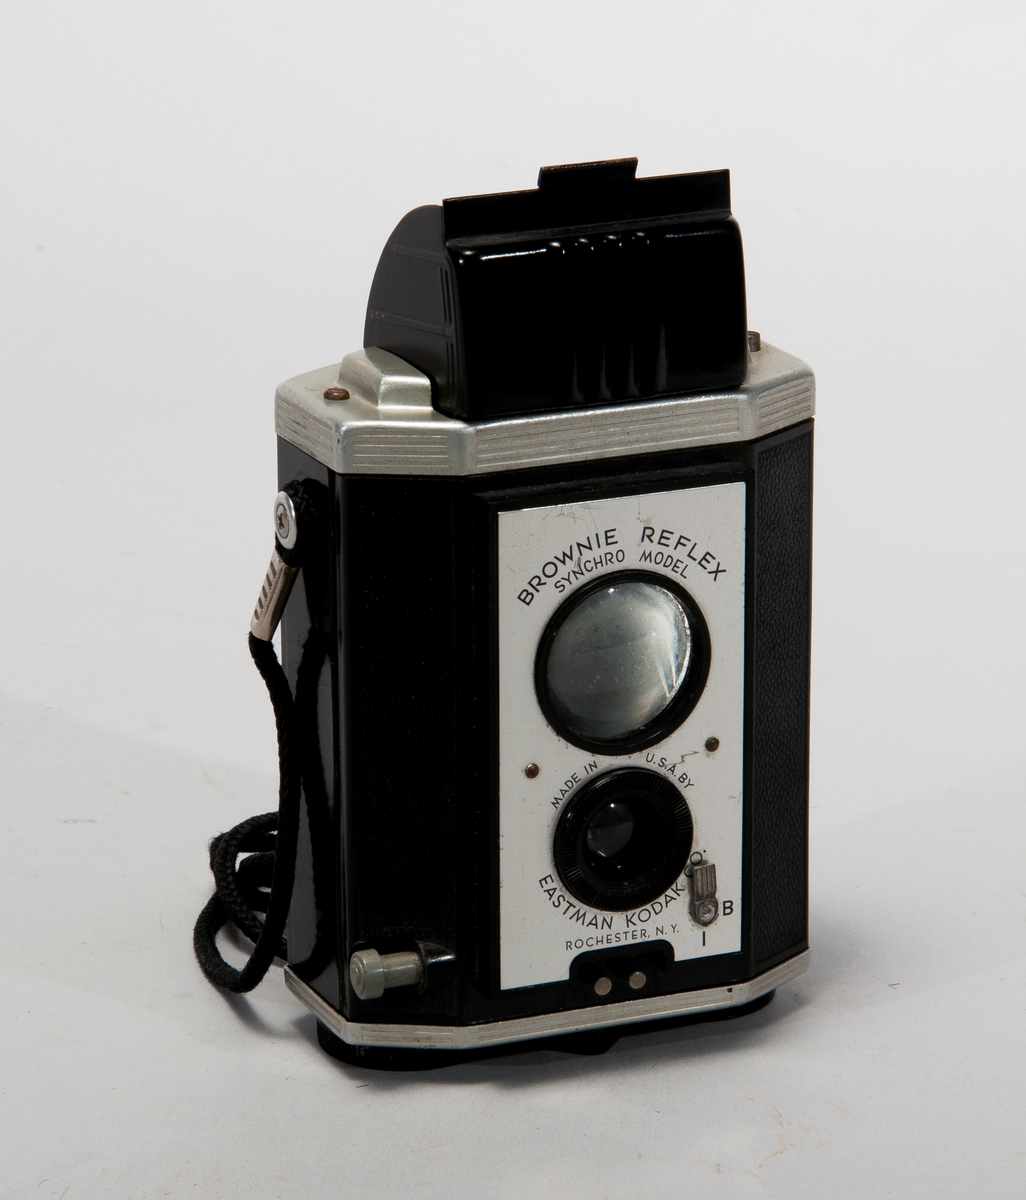 Tvåögd spegelreflexkamera för mellanformat, tillverkad i bakelit och metall. Med axelrem i textilmaterial.
Märkt: Brownie Reflex Synchro Model.